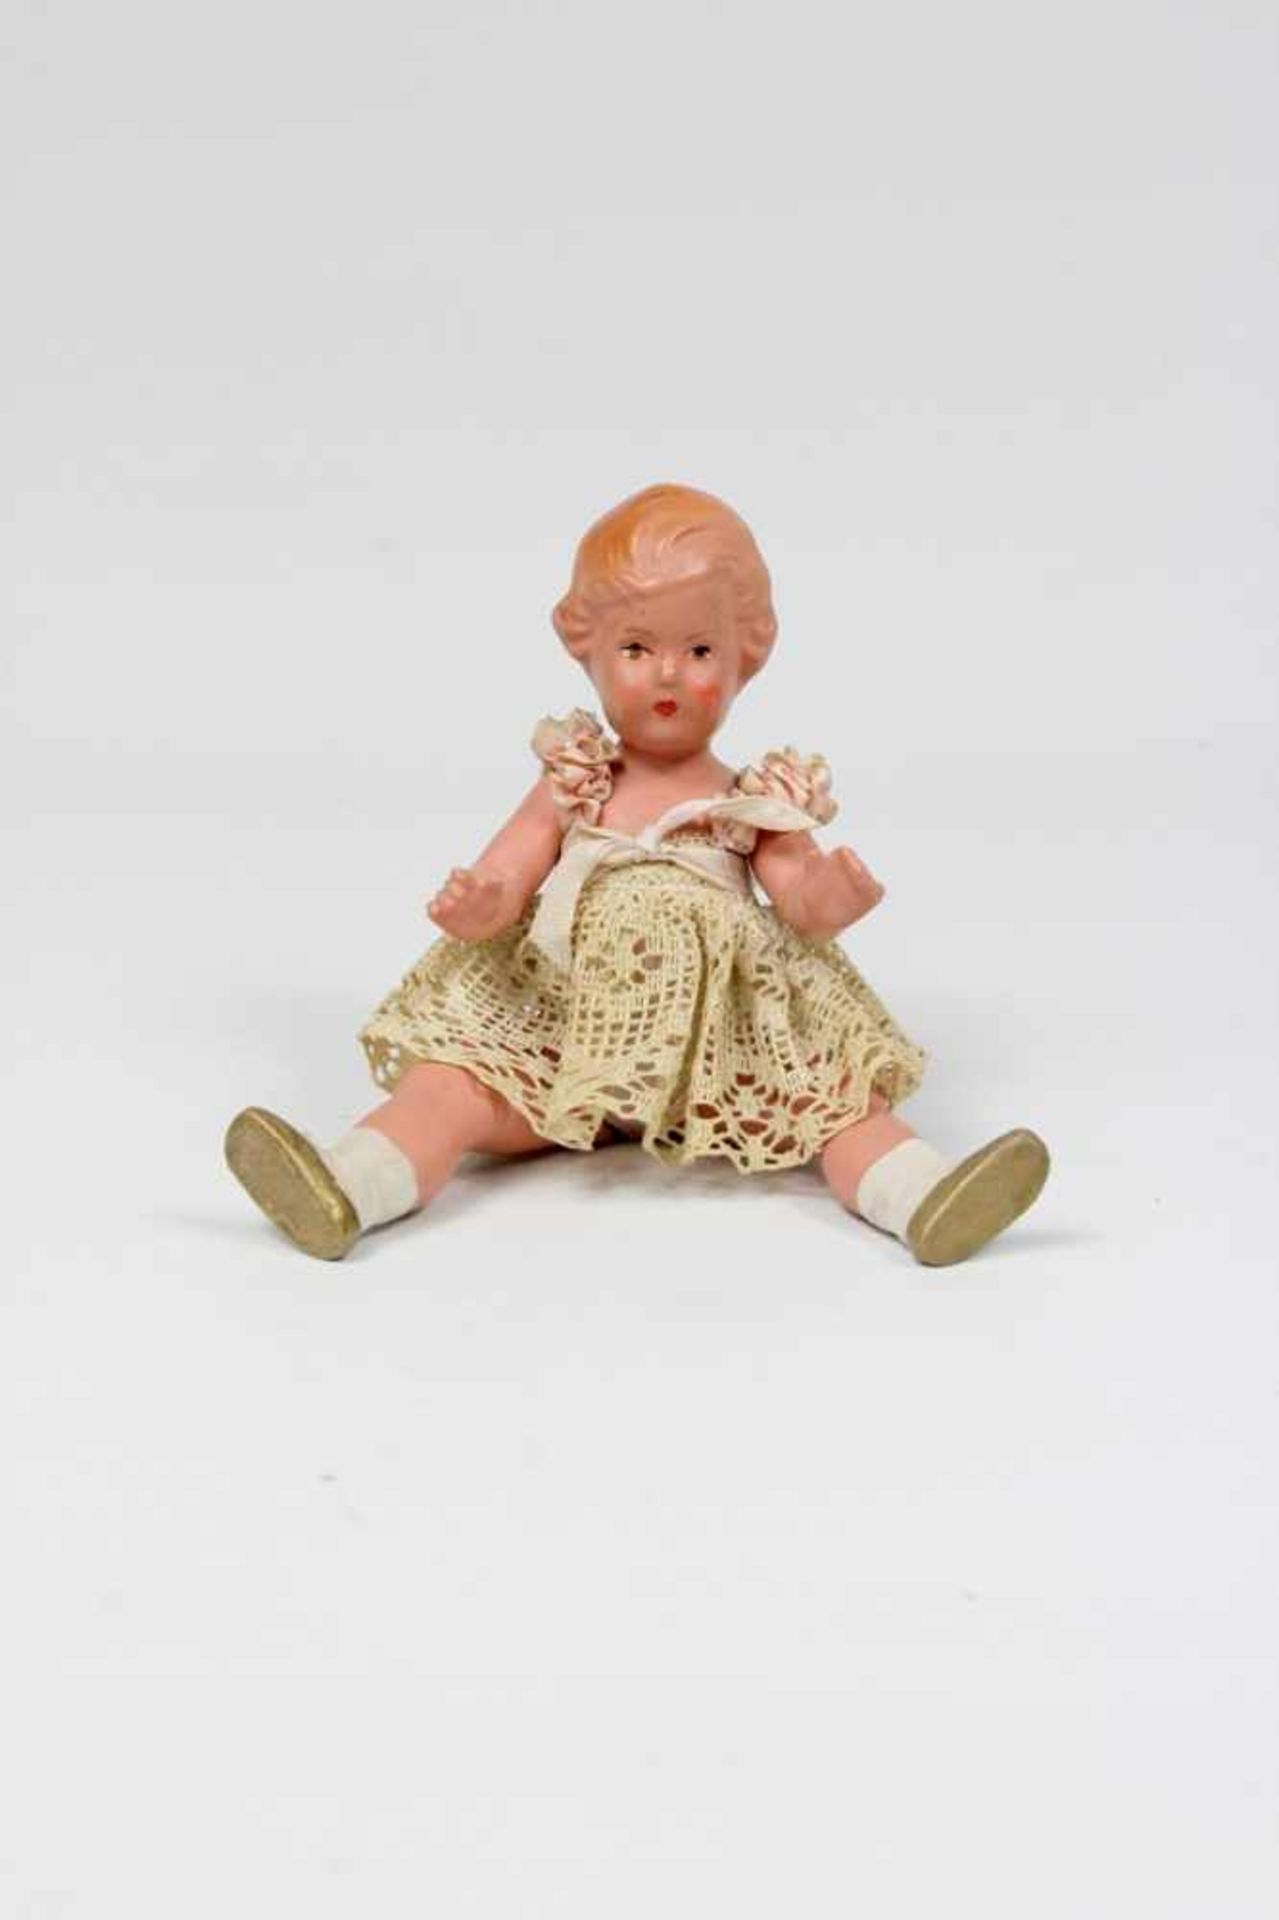 Celluloid Puppe Hersteller Dreieck ca. 1920